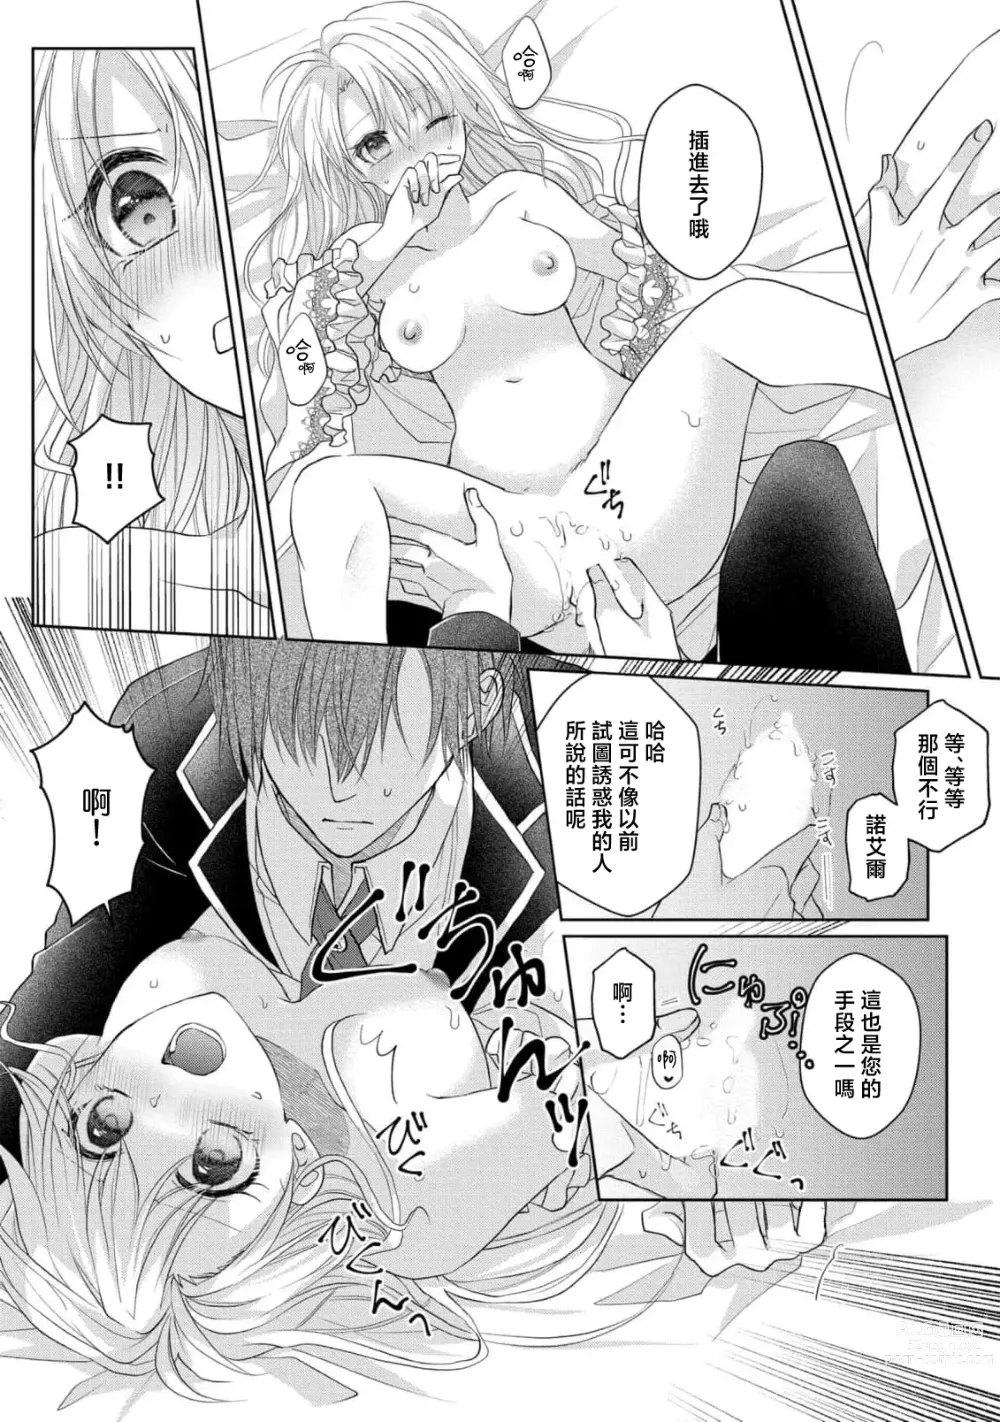 Page 14 of manga 转生成放荡大小姐之后与强硬派随从有了R18展开（tensei nochi、koyoi mo kare ha watashi wo omoku atsuku motometekimasu）